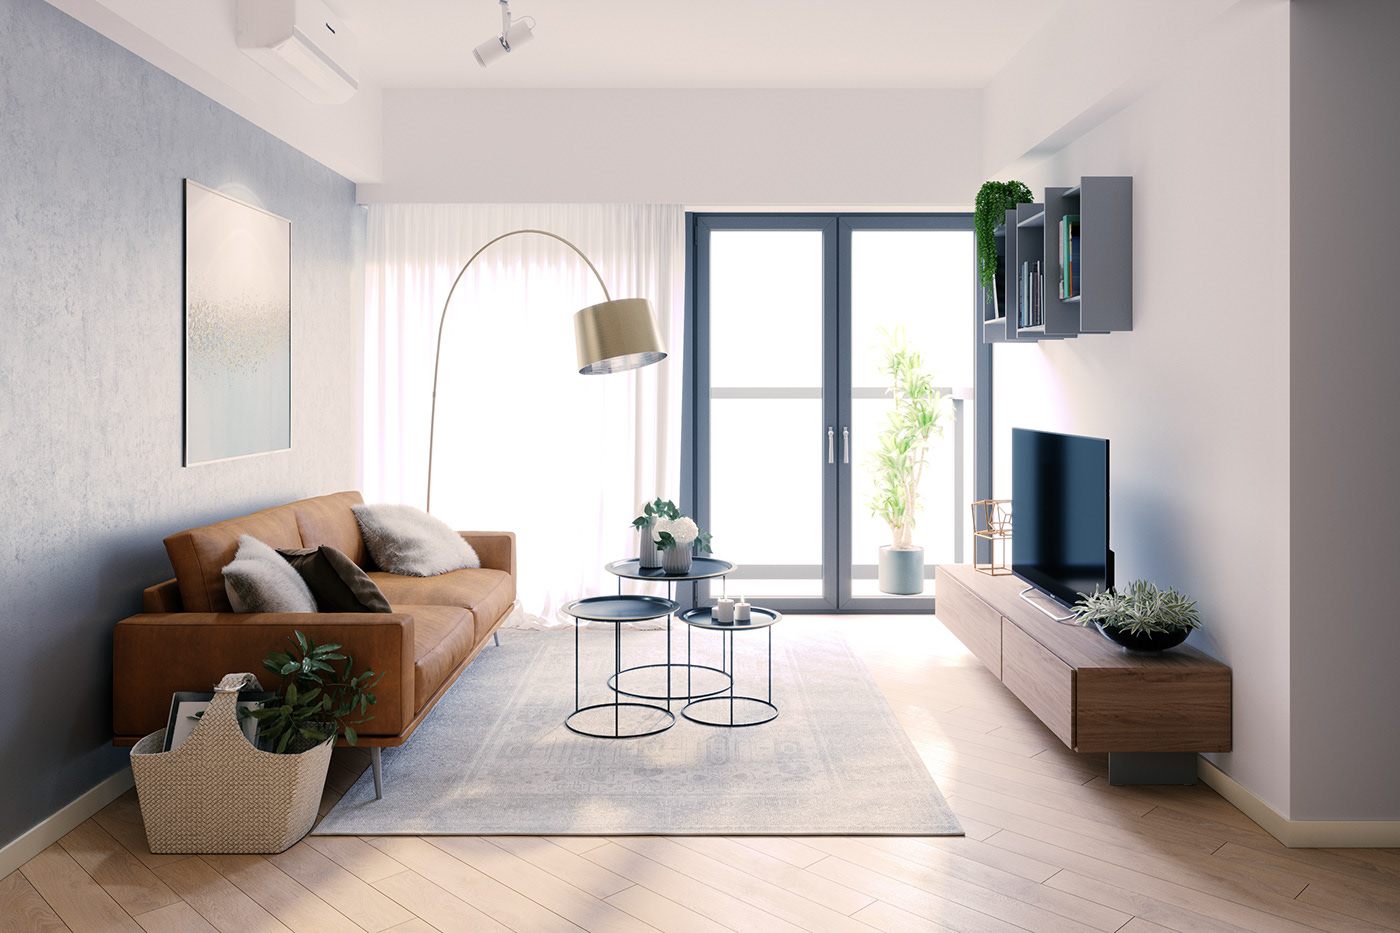 Thiết kế nội thất căn hộ phong cách hiện đại, tối giản